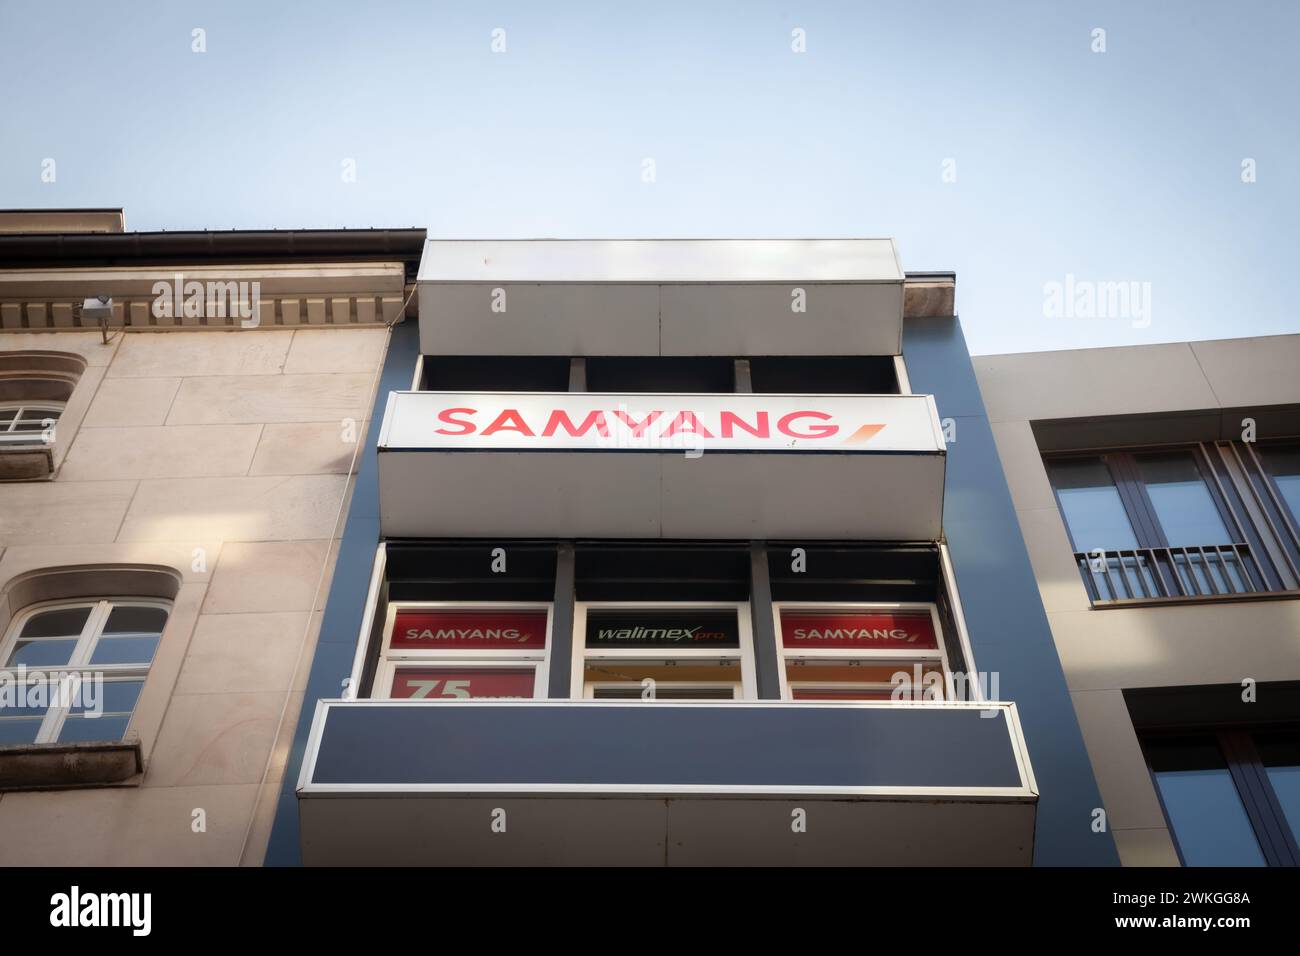 Immagine di un cartello con il logo di Samyang sul rivenditore locale di Colonia. Samyang Optics è un produttore sudcoreano di obiettivi per fotocamere per diversi maj Foto Stock